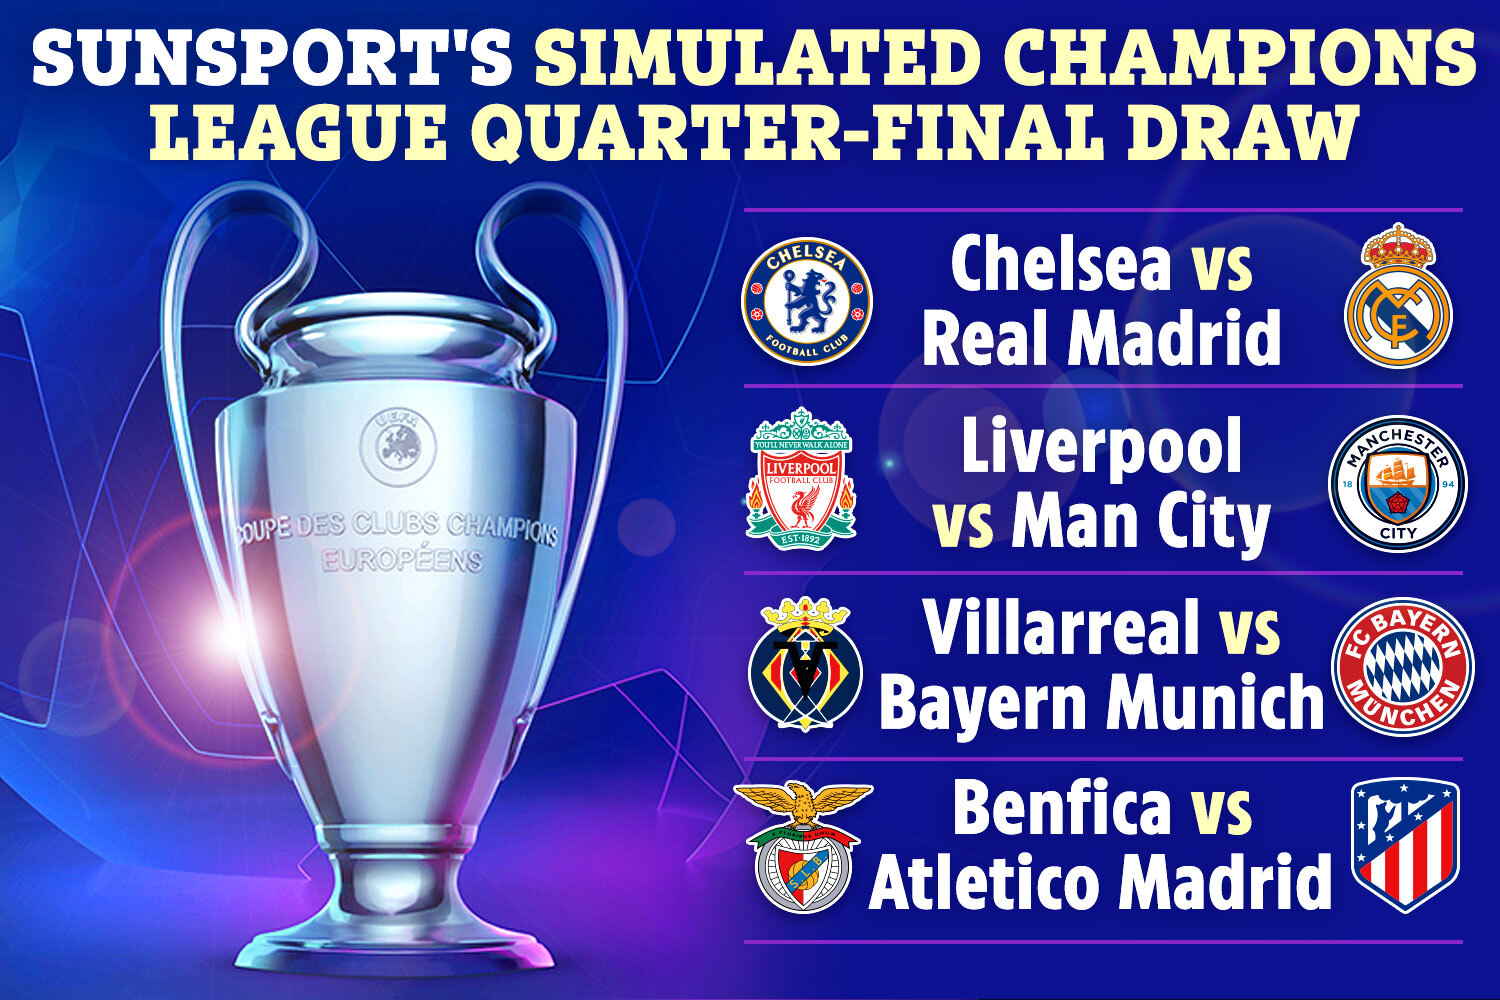 Chelsea vs Real Madrid y Liverpool vs Manchester City fueron los empates destacados en el simulacro de sorteo de SunSport